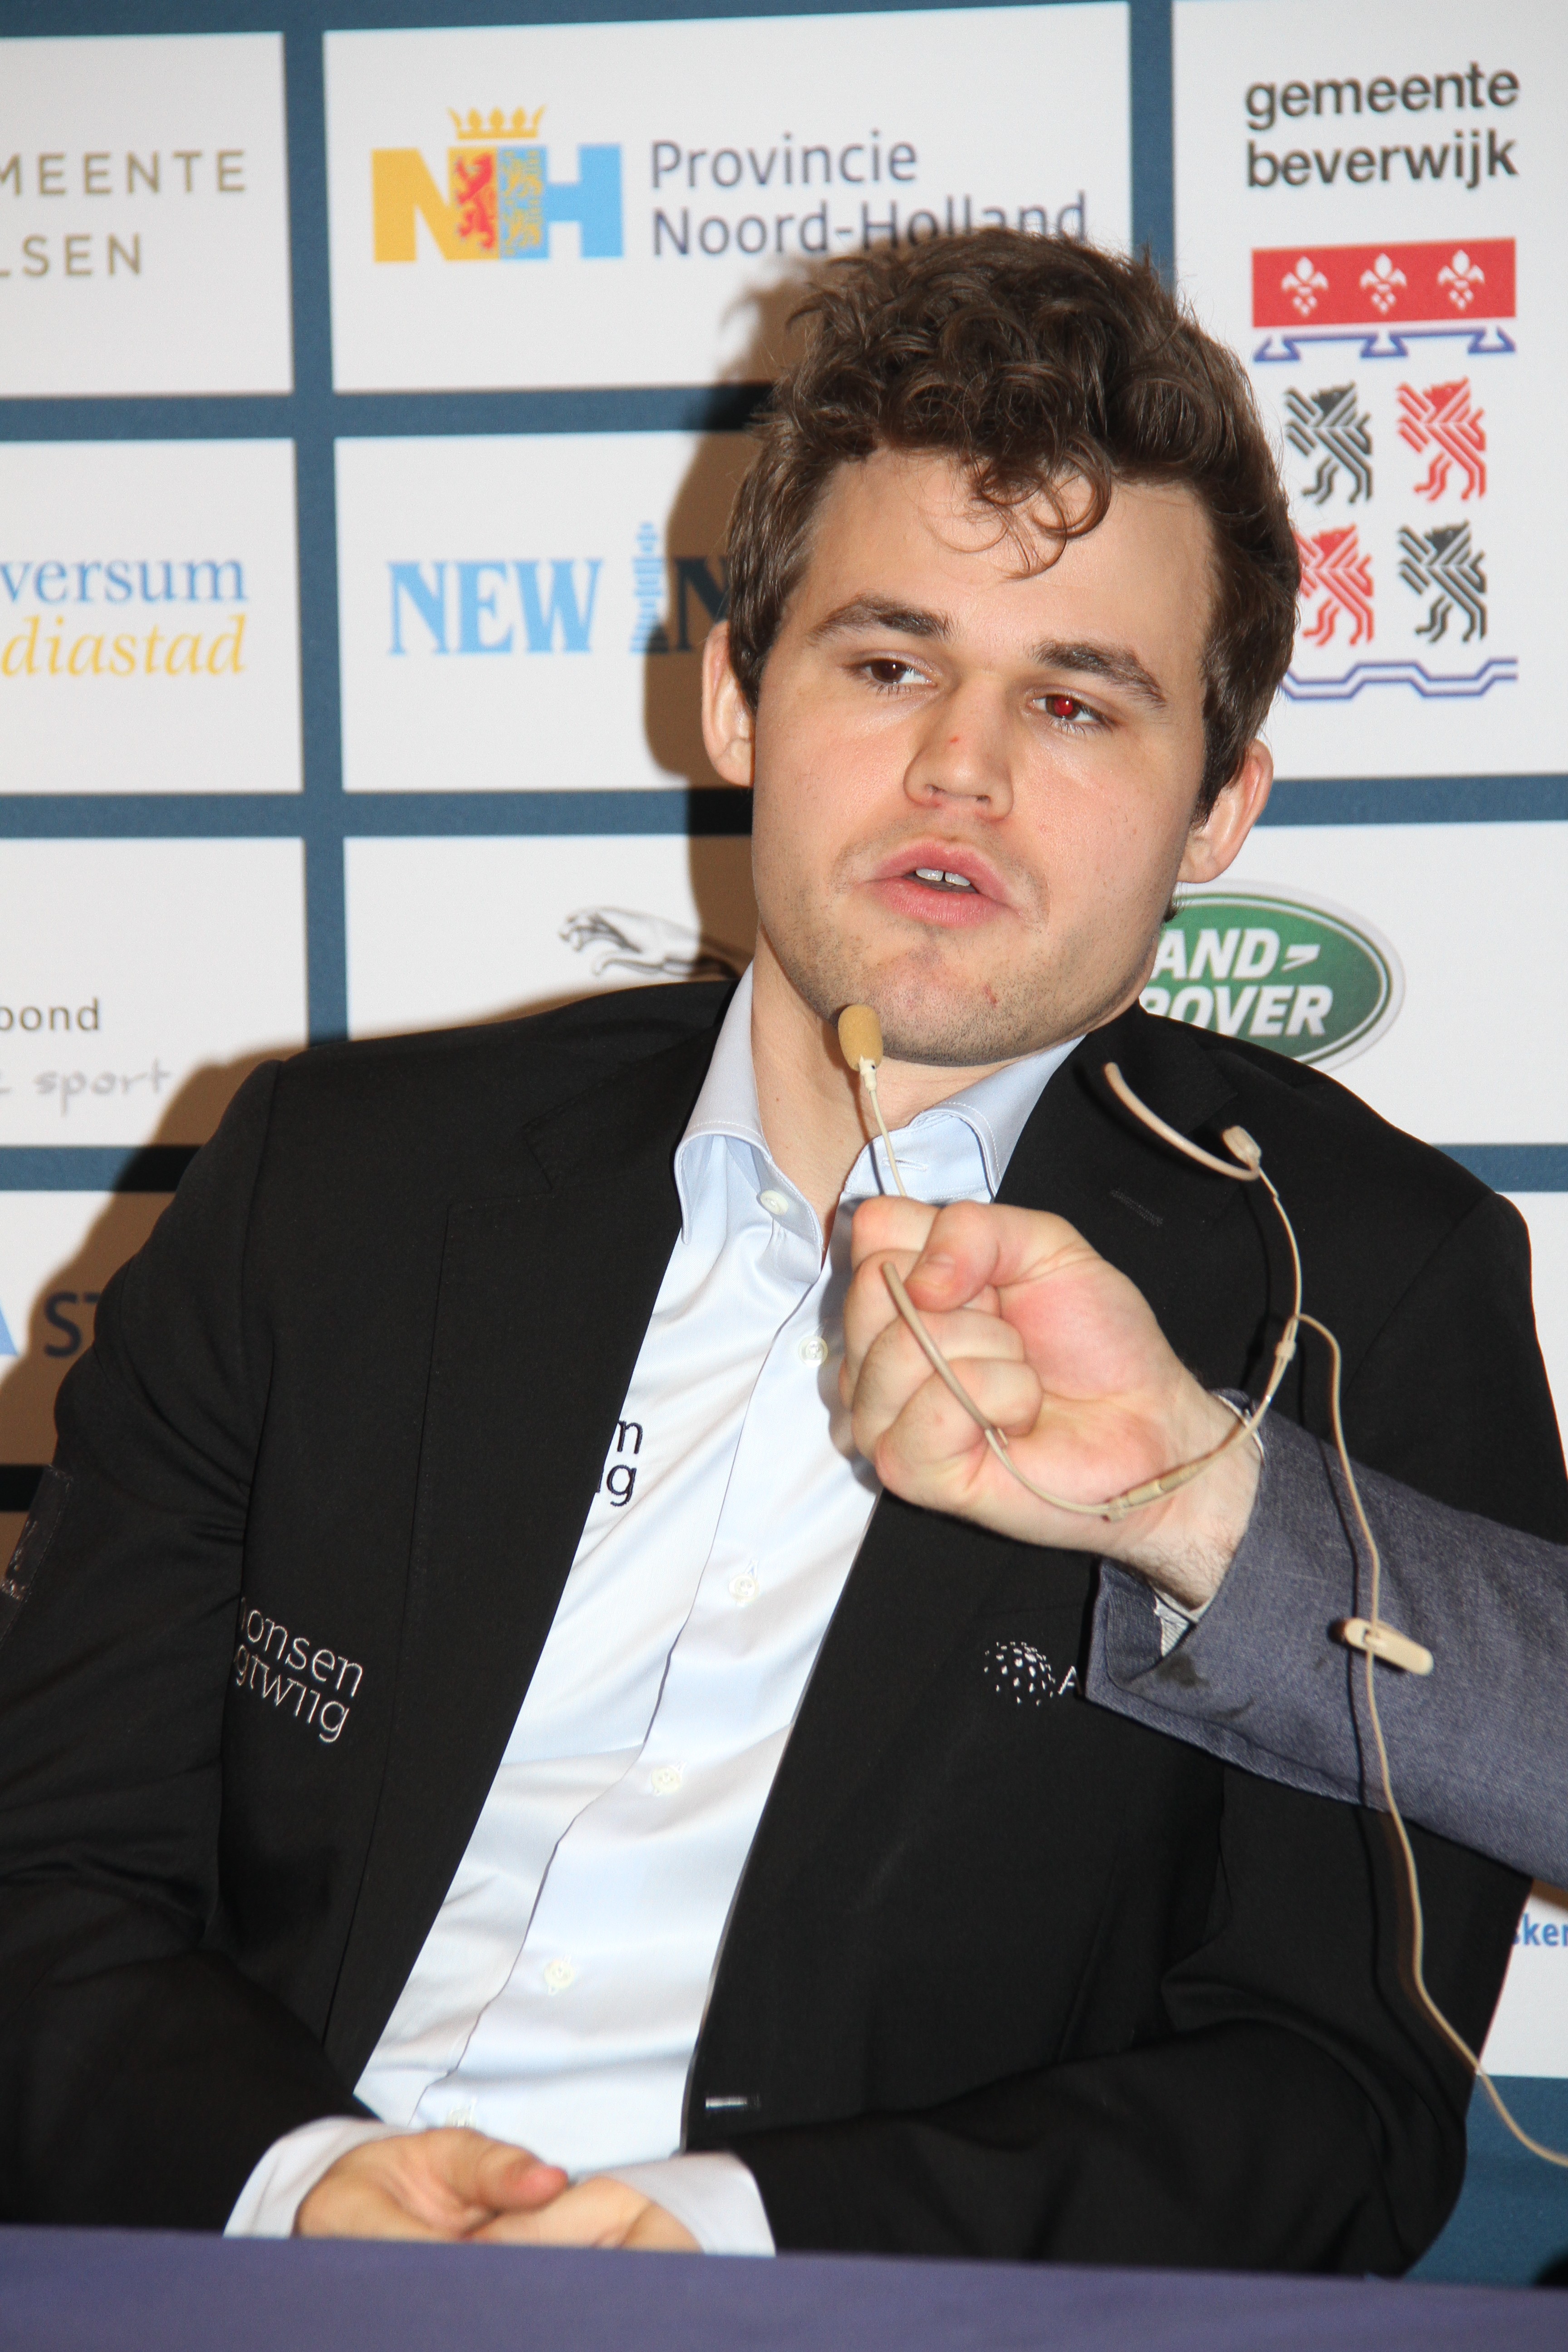 Magnus Carlsen wins 8th Wijk aan Zee title